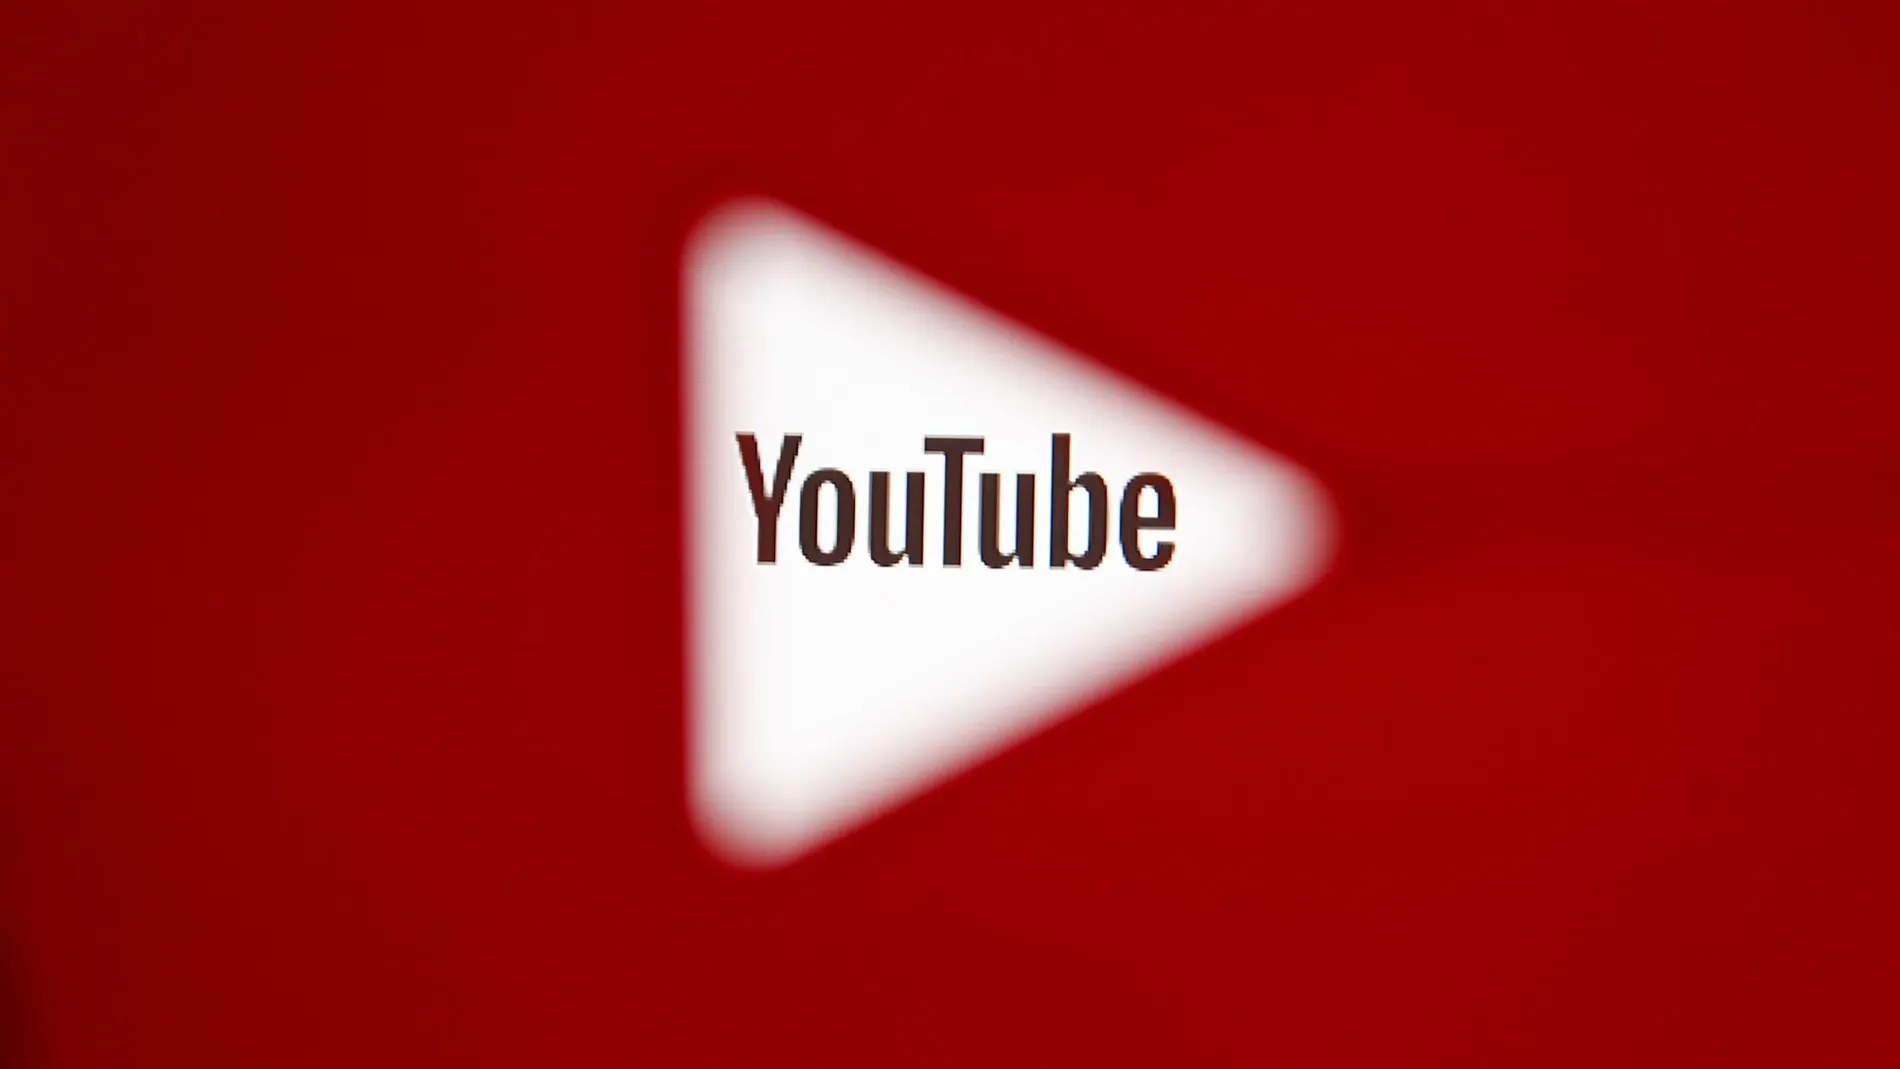 Un fallo en Youtube recomienda vídeos de menores a pedófilos